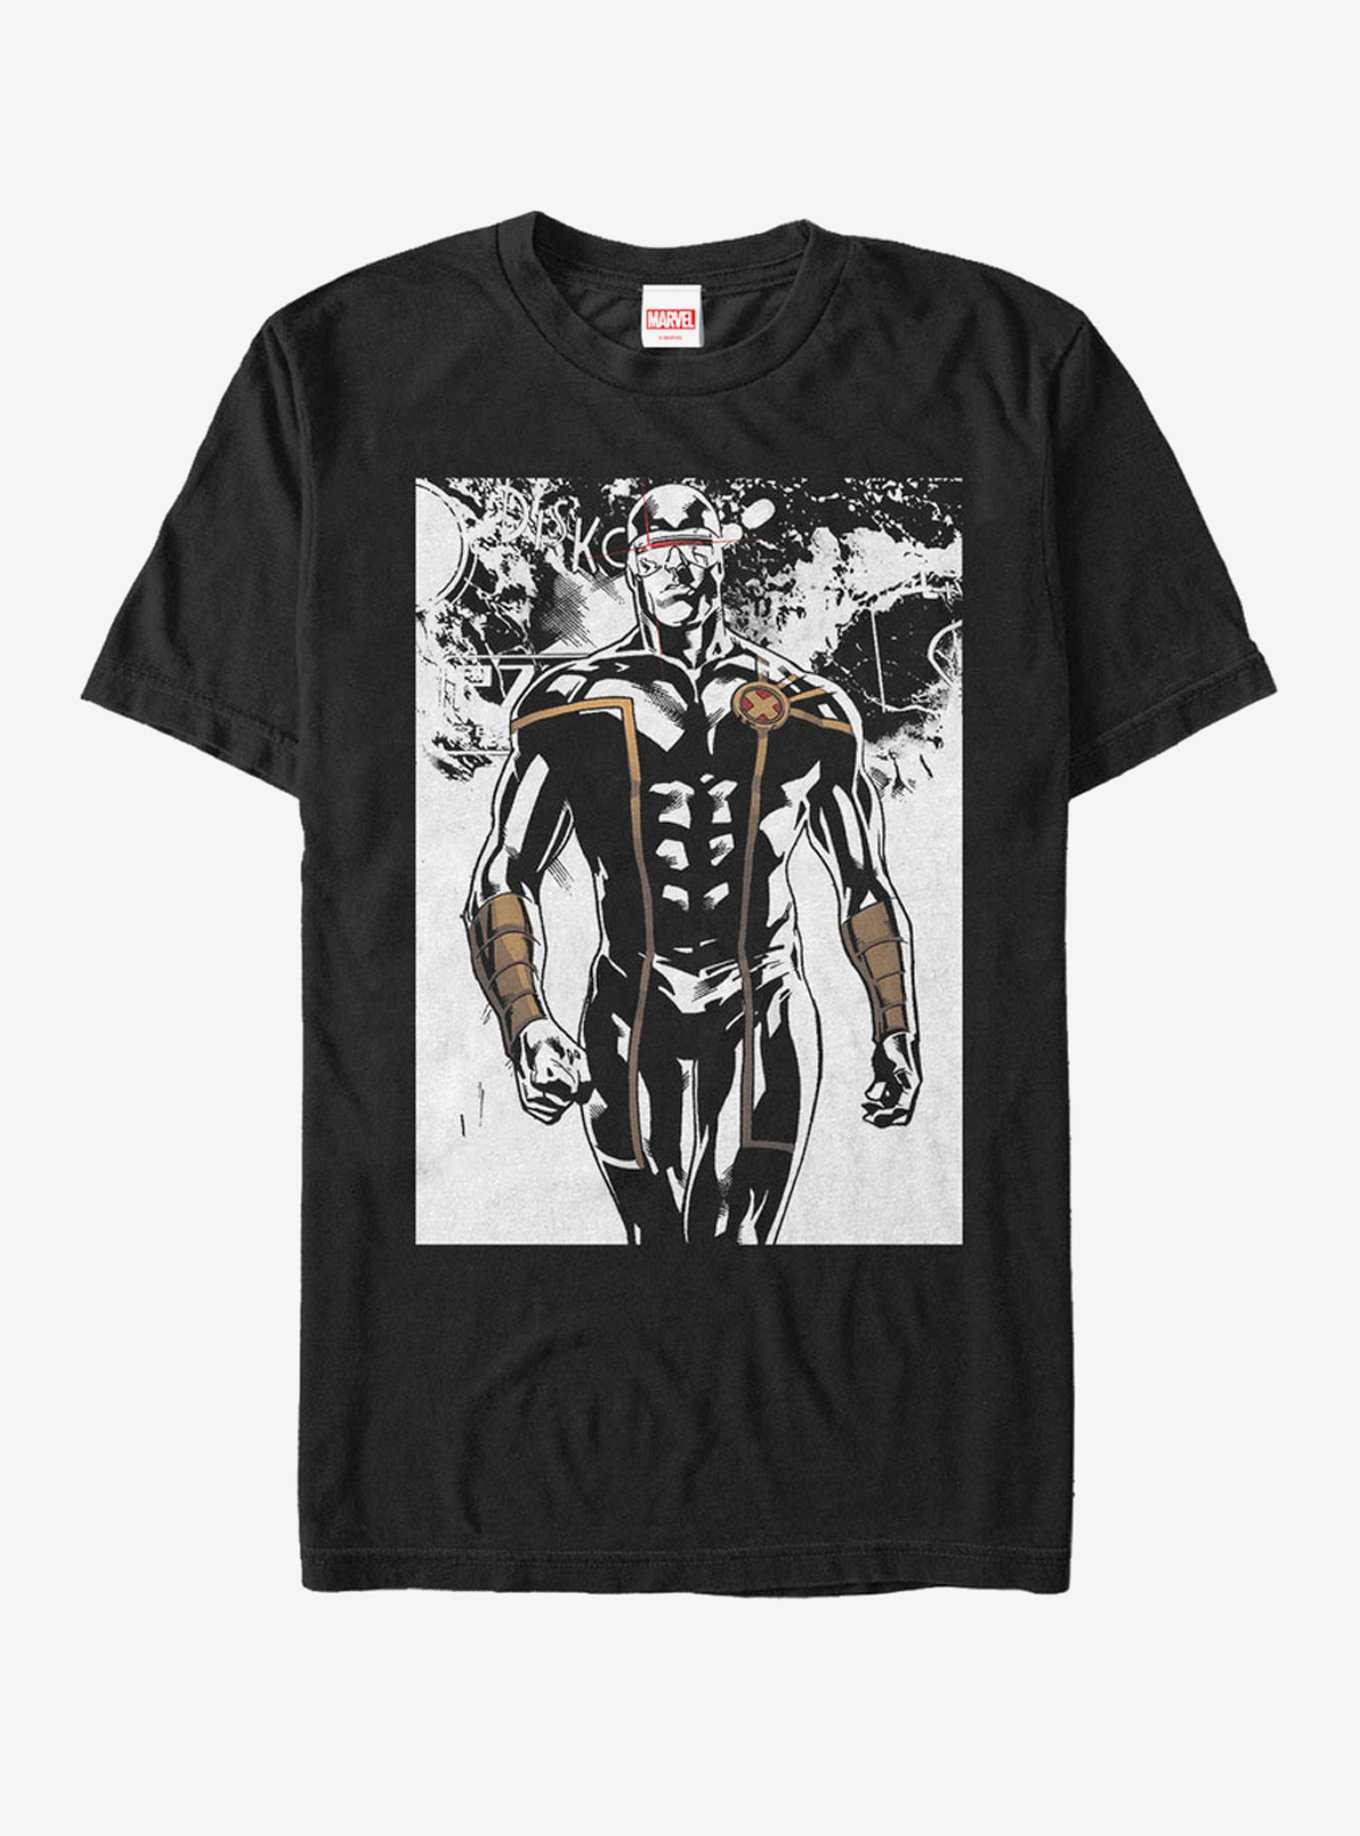 Marvel X-Men Cyclops Emerge T-Shirt, , hi-res